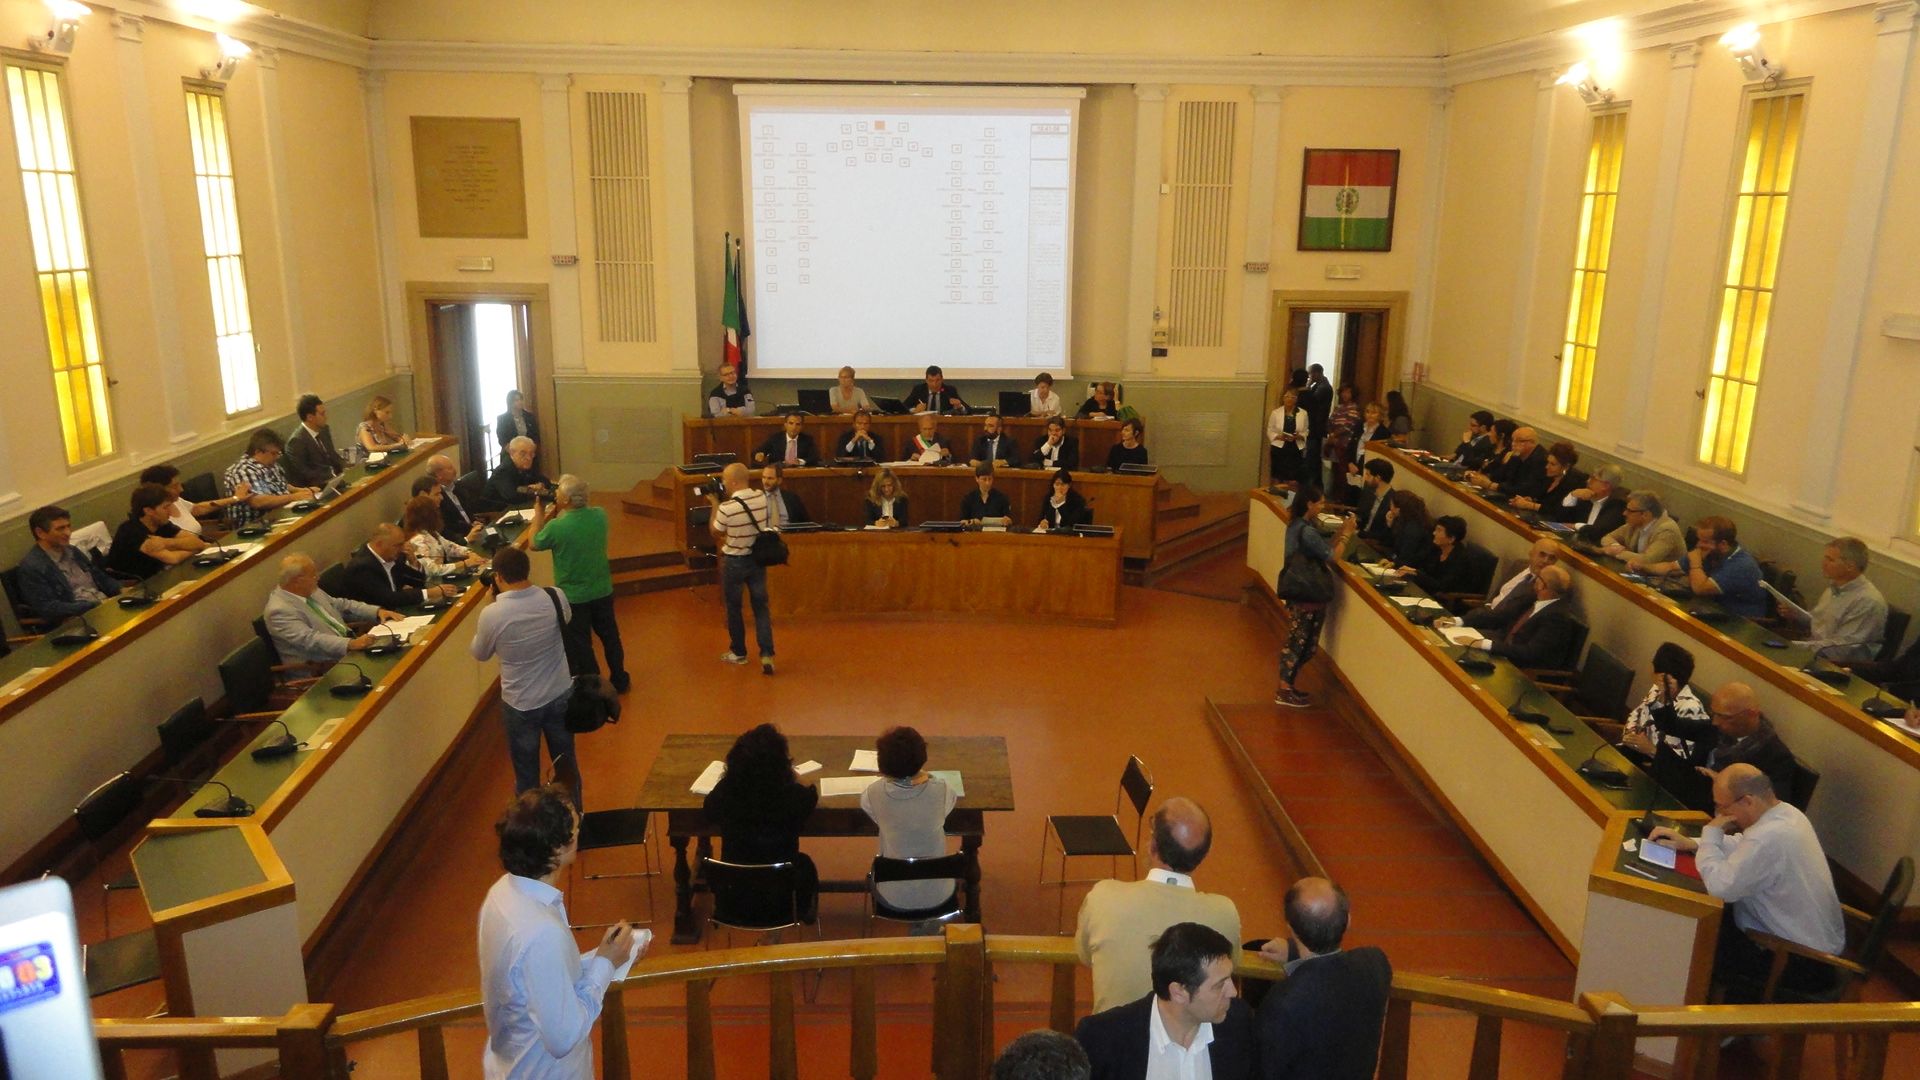 Featured image for “19-20-21 dicembre: in Consiglio comunale si discute il bilancio di Ferrara”